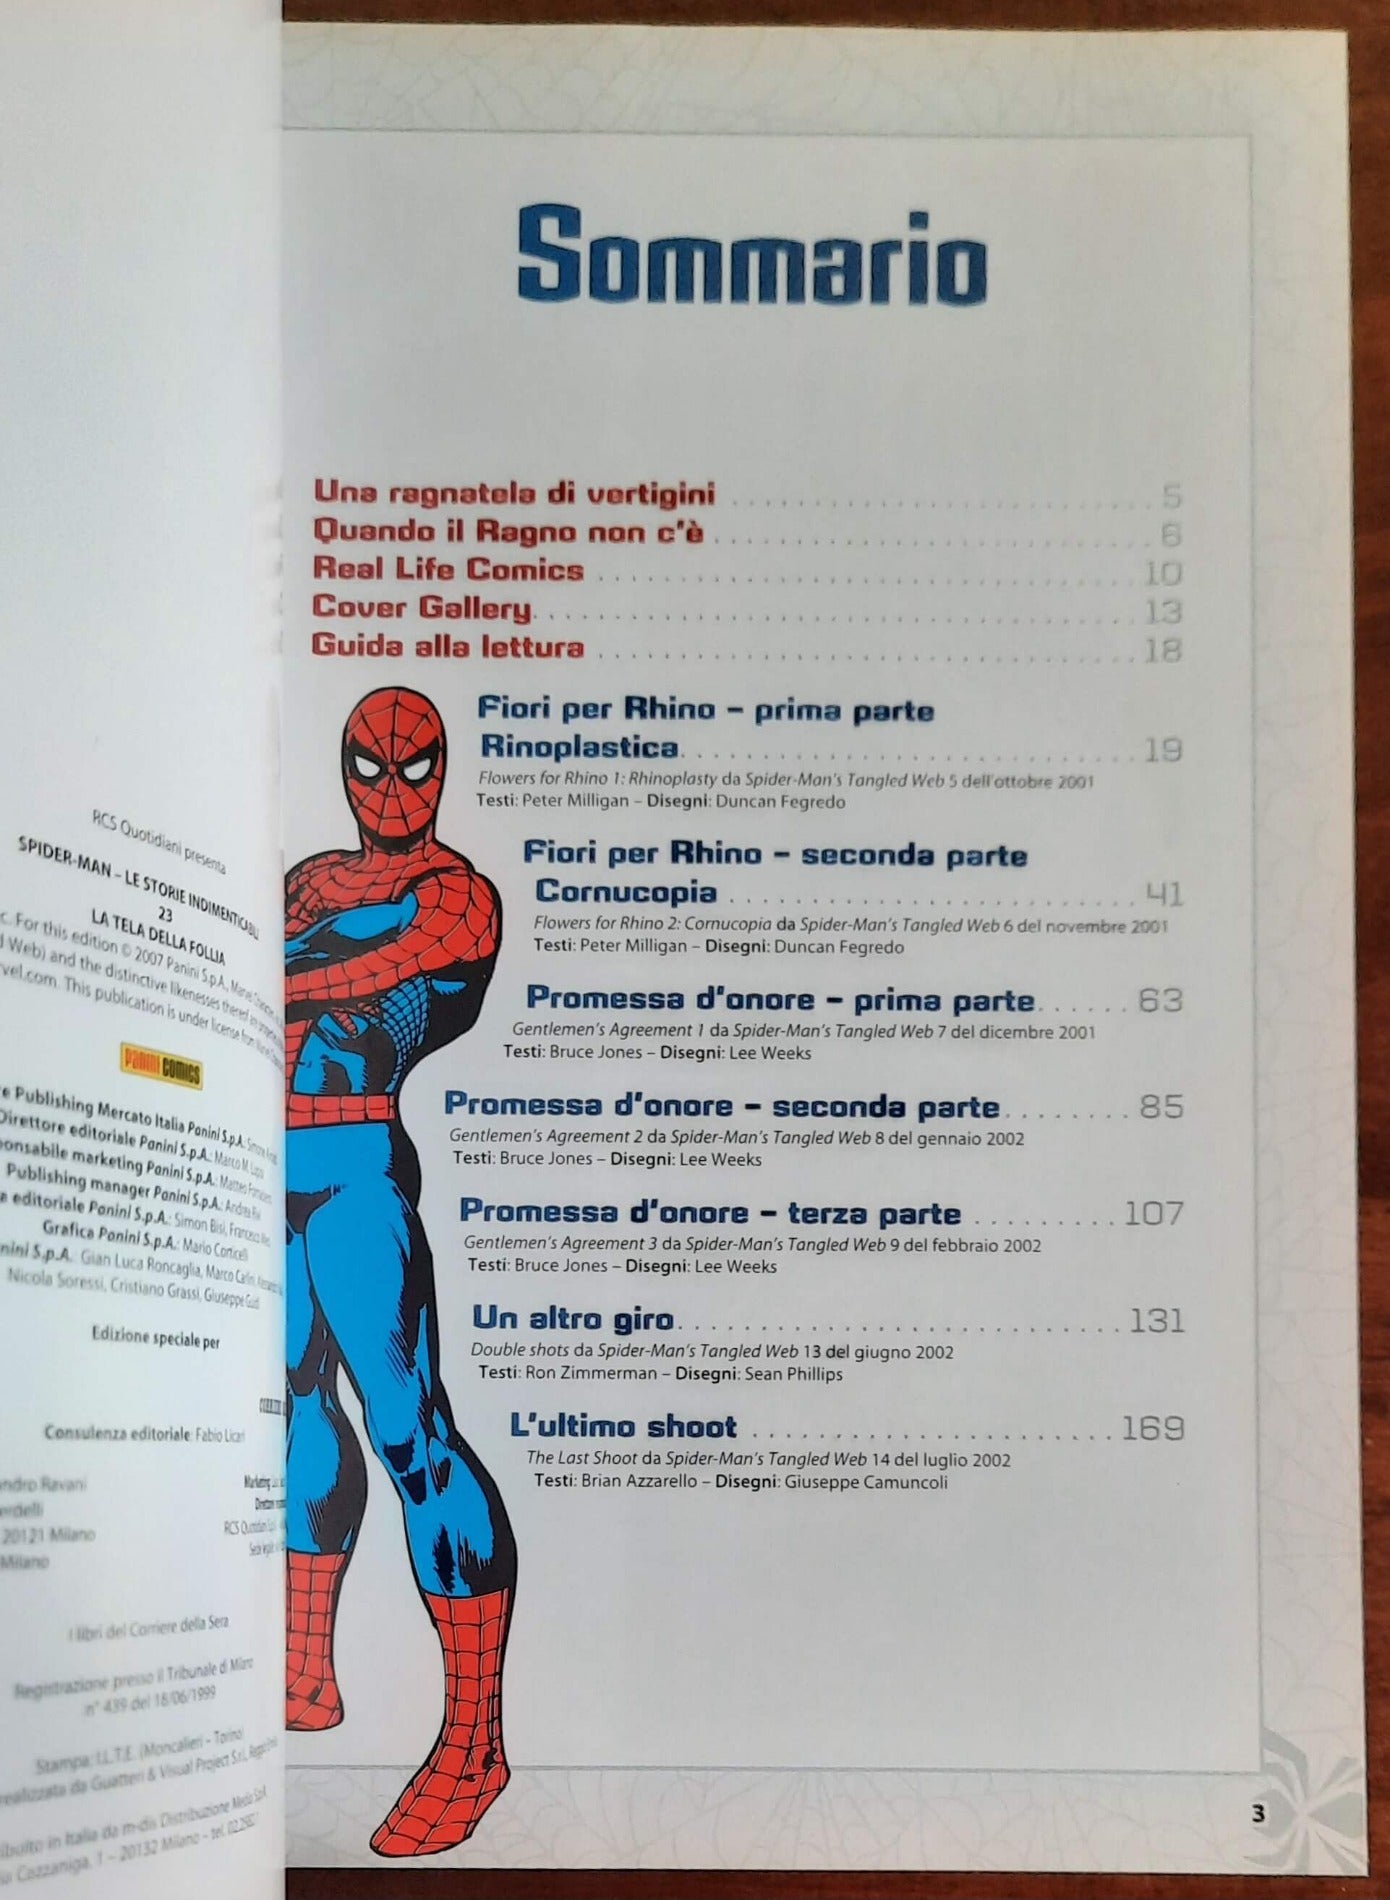 Spider-Man: Le storie indimenticabili - Vol. 23 - La tela della follia